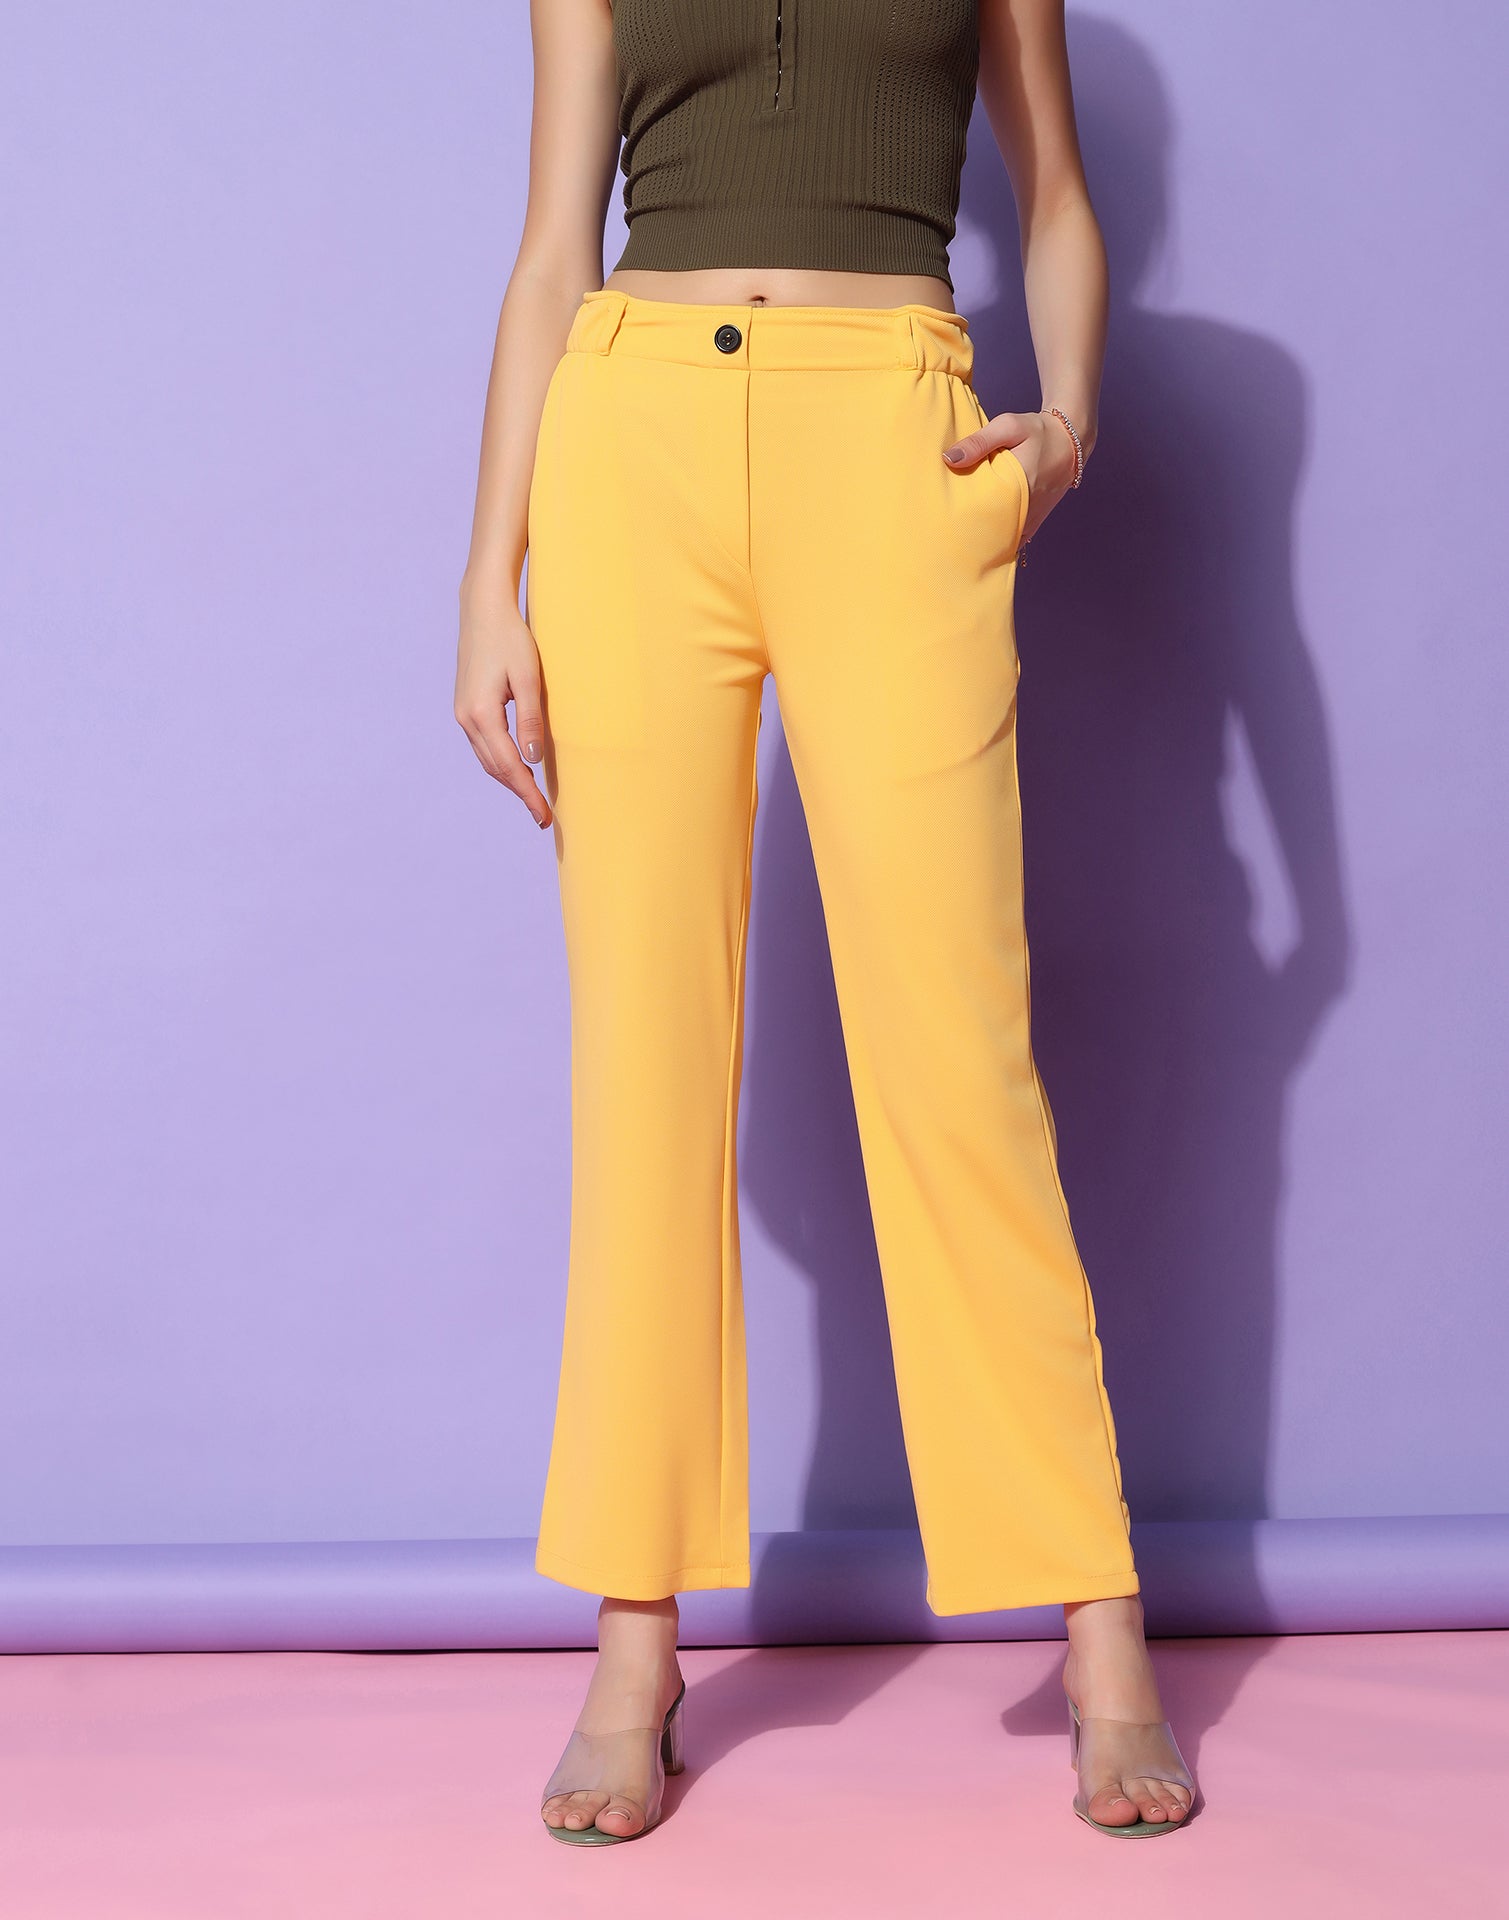 Allen Solly Flared Women Yellow Trousers  Buy Allen Solly Flared Women  Yellow Trousers Online at Best Prices in India  Flipkartcom